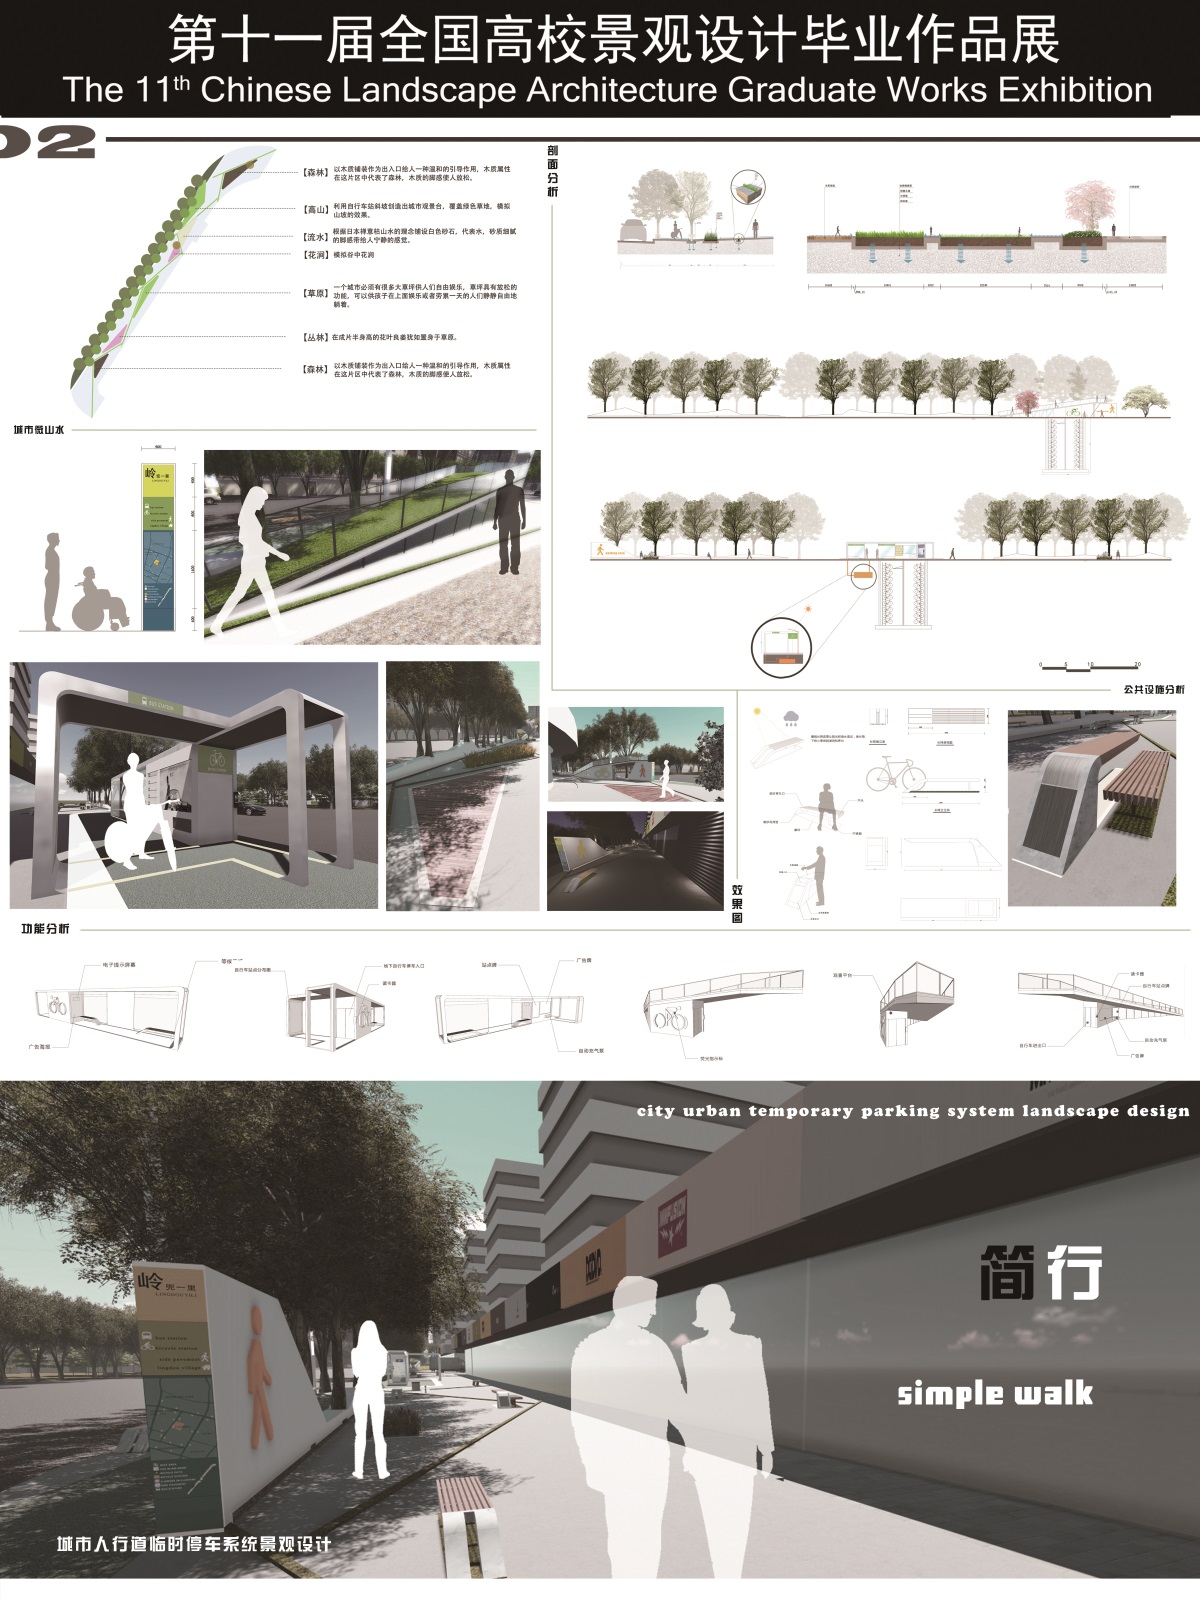 简行——城市人行道临时停车系统景观设计-1